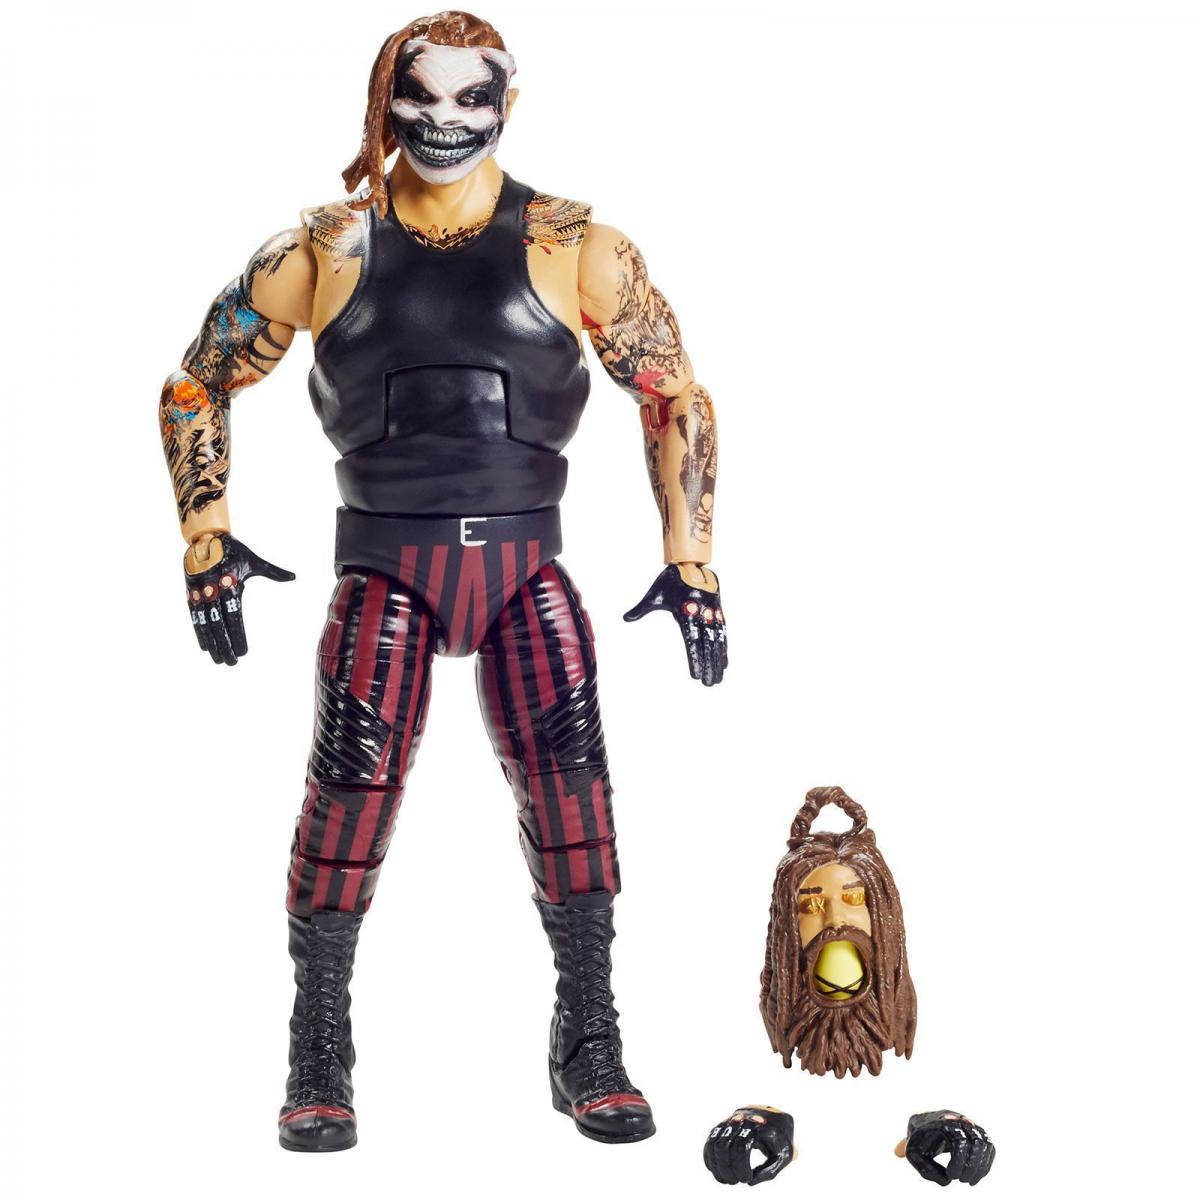 2020 WWE Mattel Elite Collection Series 77 "The Fiend" Bray Wyatt